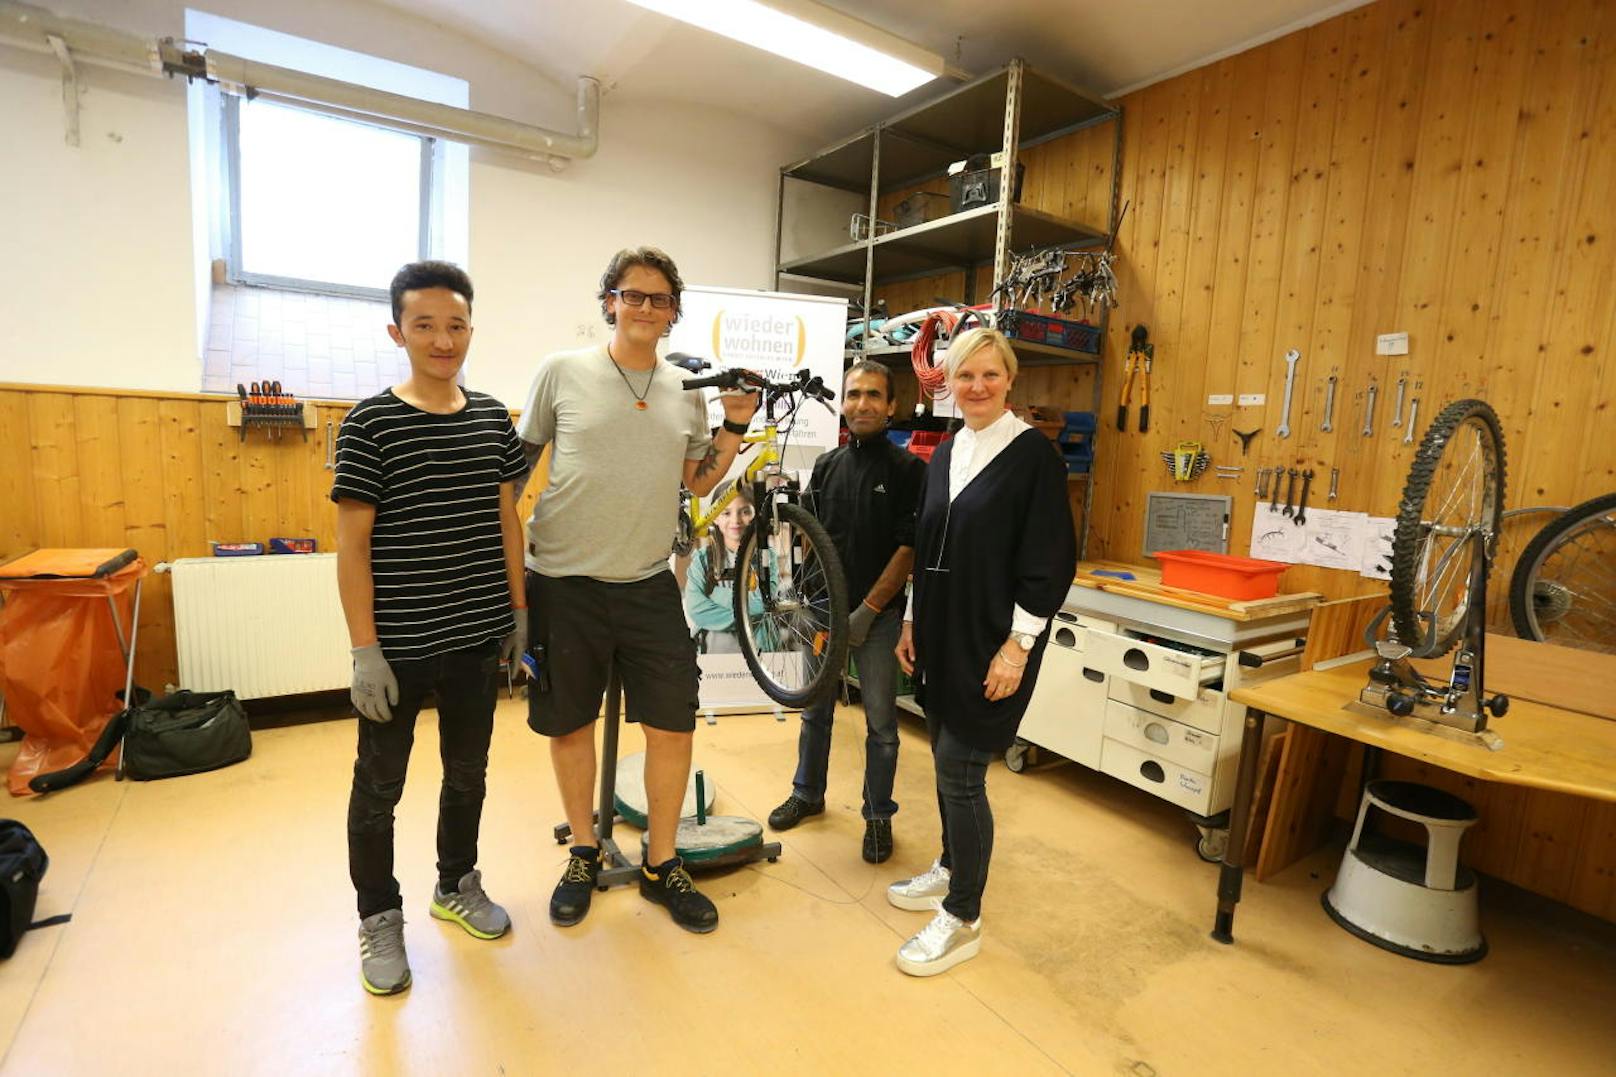 Einfach vorbeischauen! Stadträtin Sandra Frauenberger (rechts) besuchte die Fahrrad-Werkstatt. Mortesa B. (22), "Bike Kitchen"-Chef Florian Sixta und Wathia M. (44) "verarzten" alte Fahrräder.